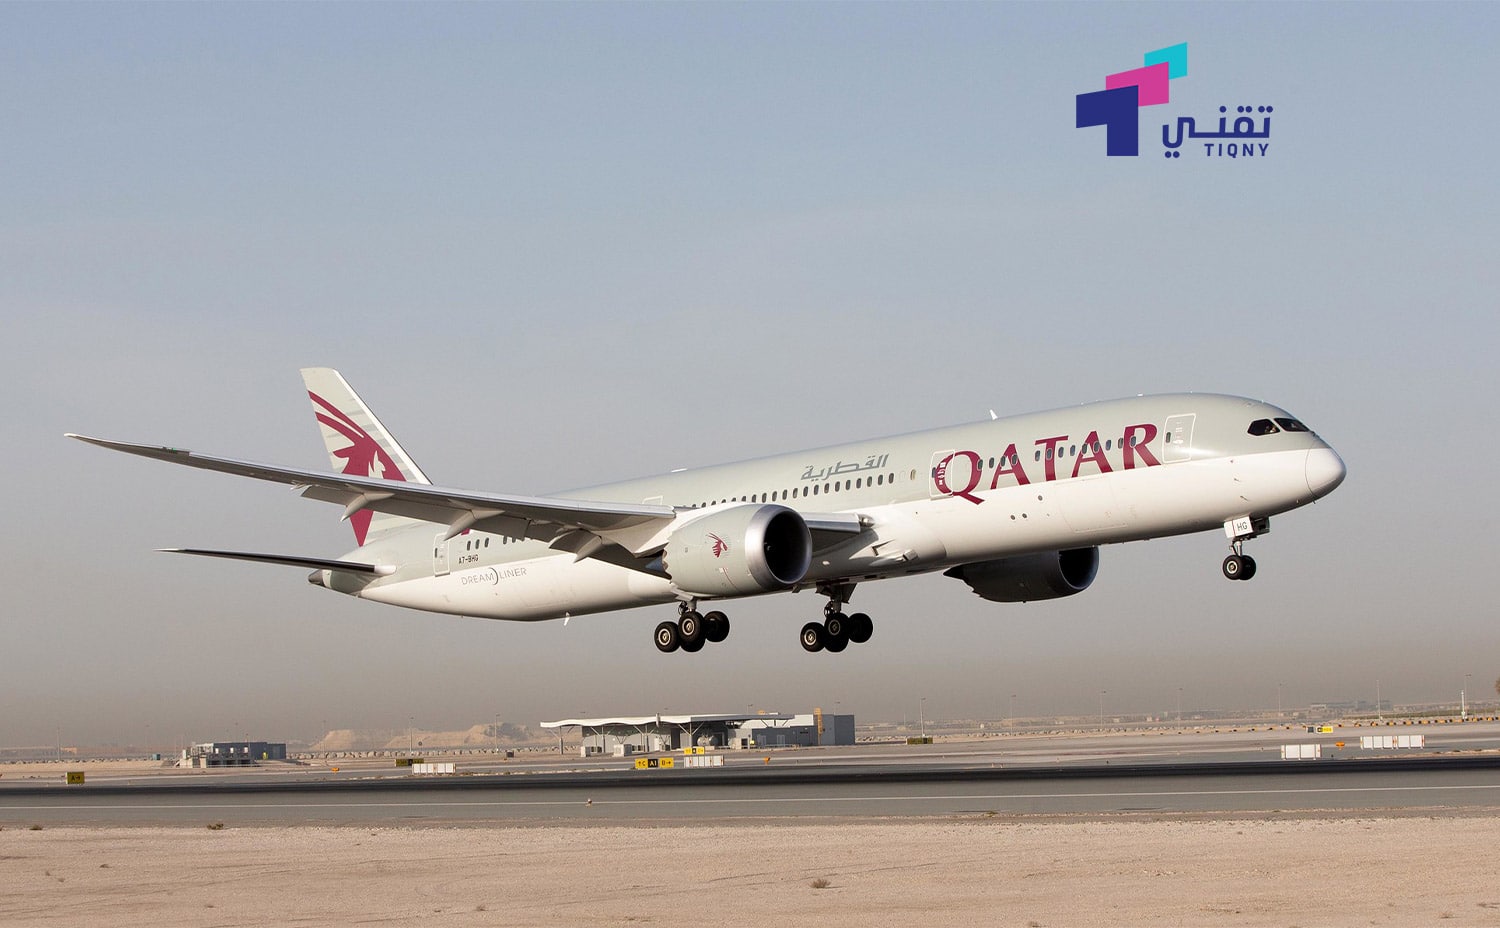 برنامج الخطوط الجوية القطرية Qatar Airways